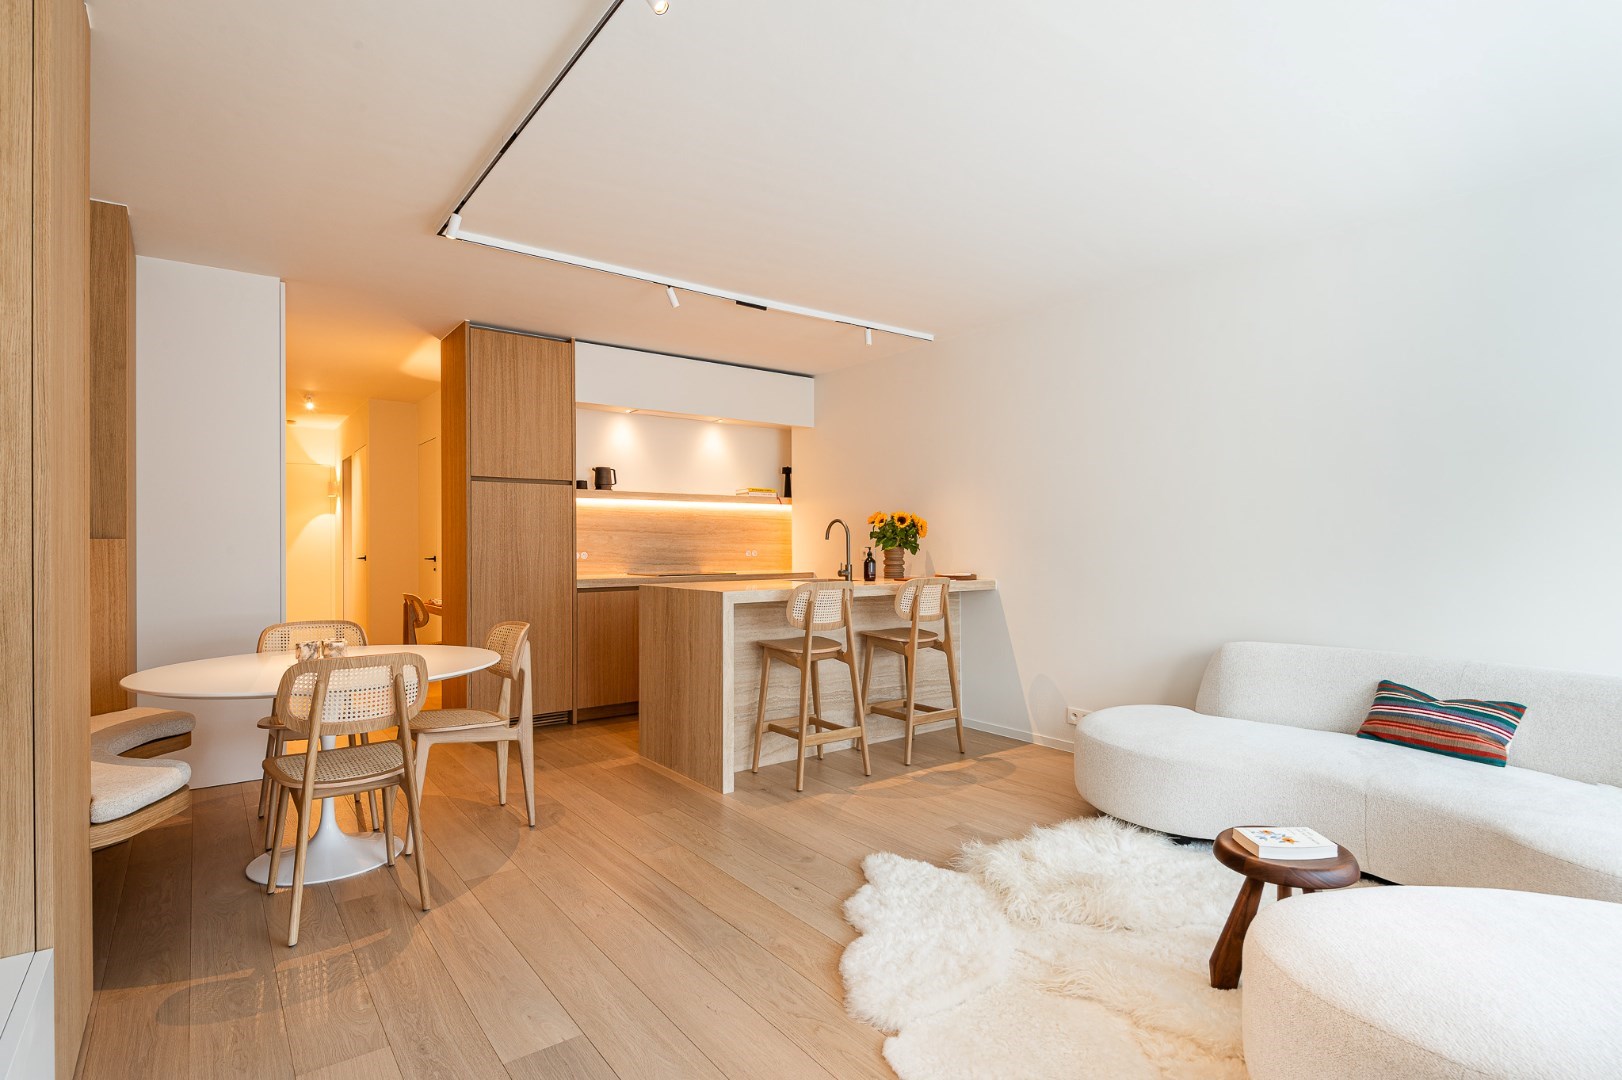 Prachtig gerenoveerd, zonnig appartement met zijdelings zeezicht, centraal gelegen vlakbij het Rubensplein. Mogelijkheid tot aankoop parking in het gebouw. foto 1